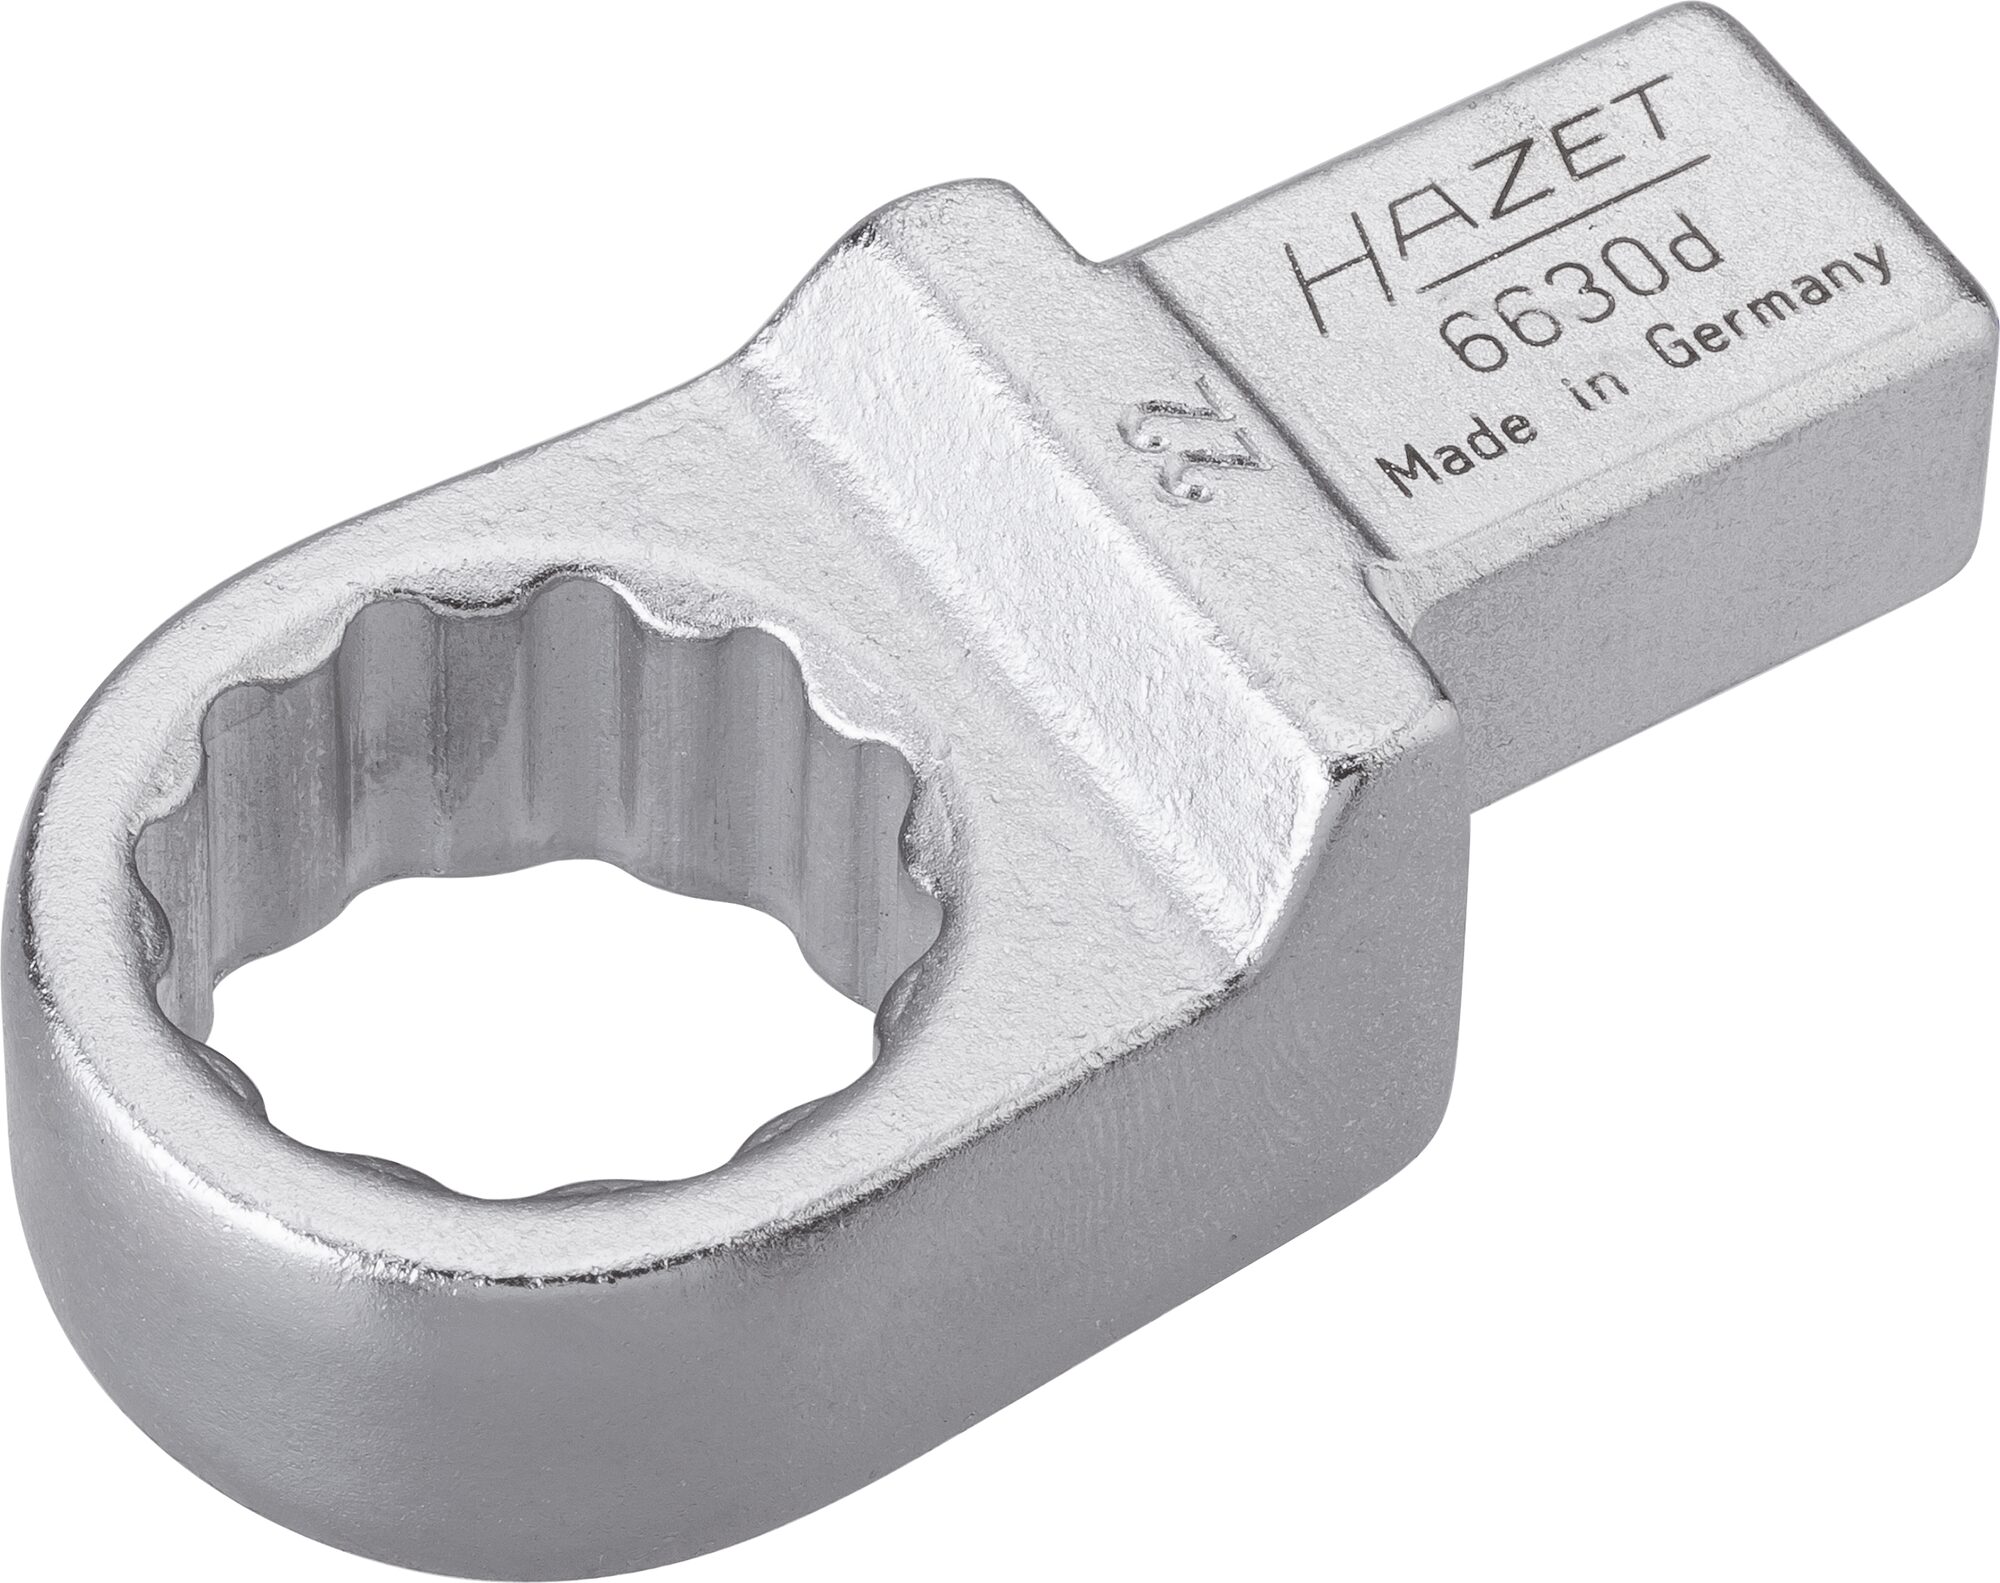 HAZET Einsteck-Ringschlüssel 6630D-22 · Einsteck-Vierkant 14 x 18 mm · Außen Doppel-Sechskant-Tractionsprofil · 22 mm